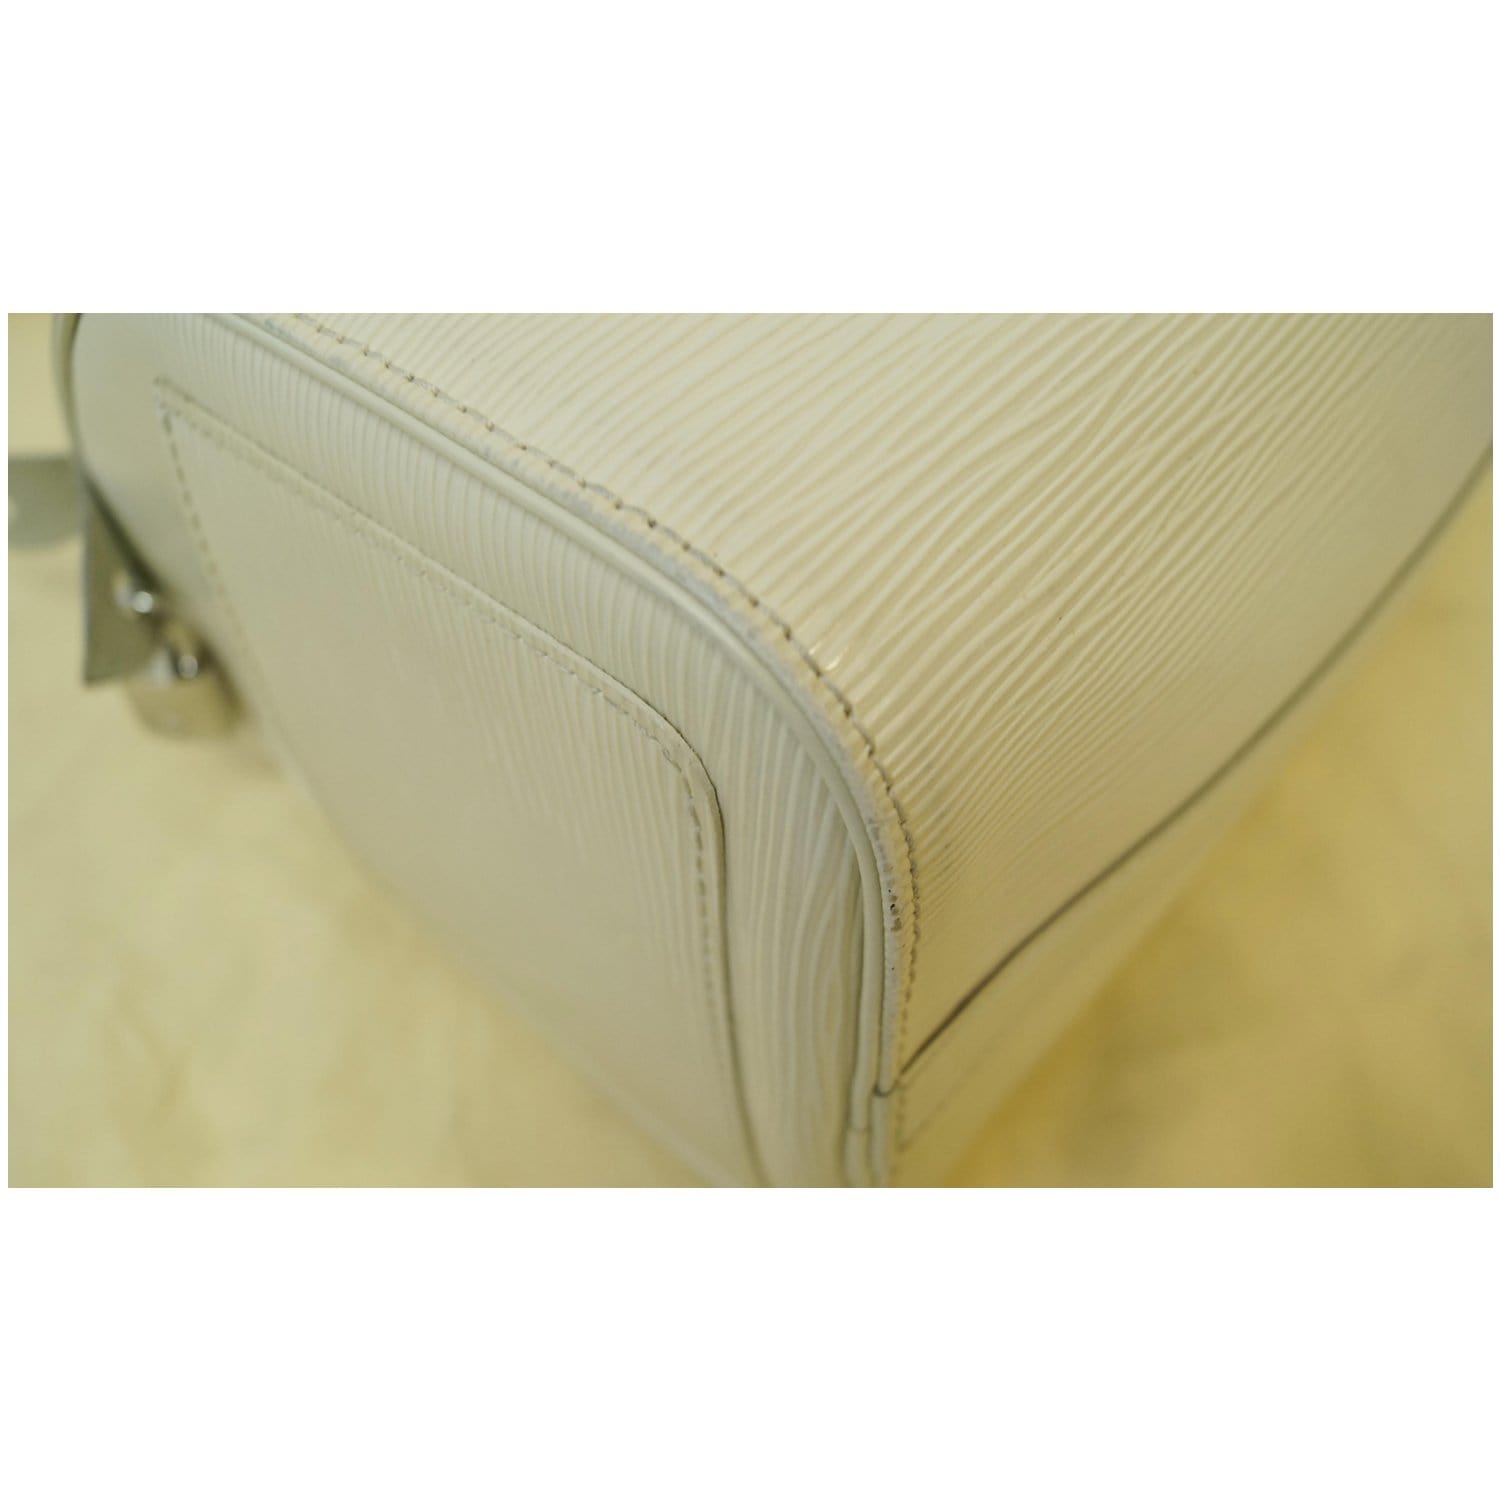 Louis Vuitton - Speedy 30 Epi Leather Ivory